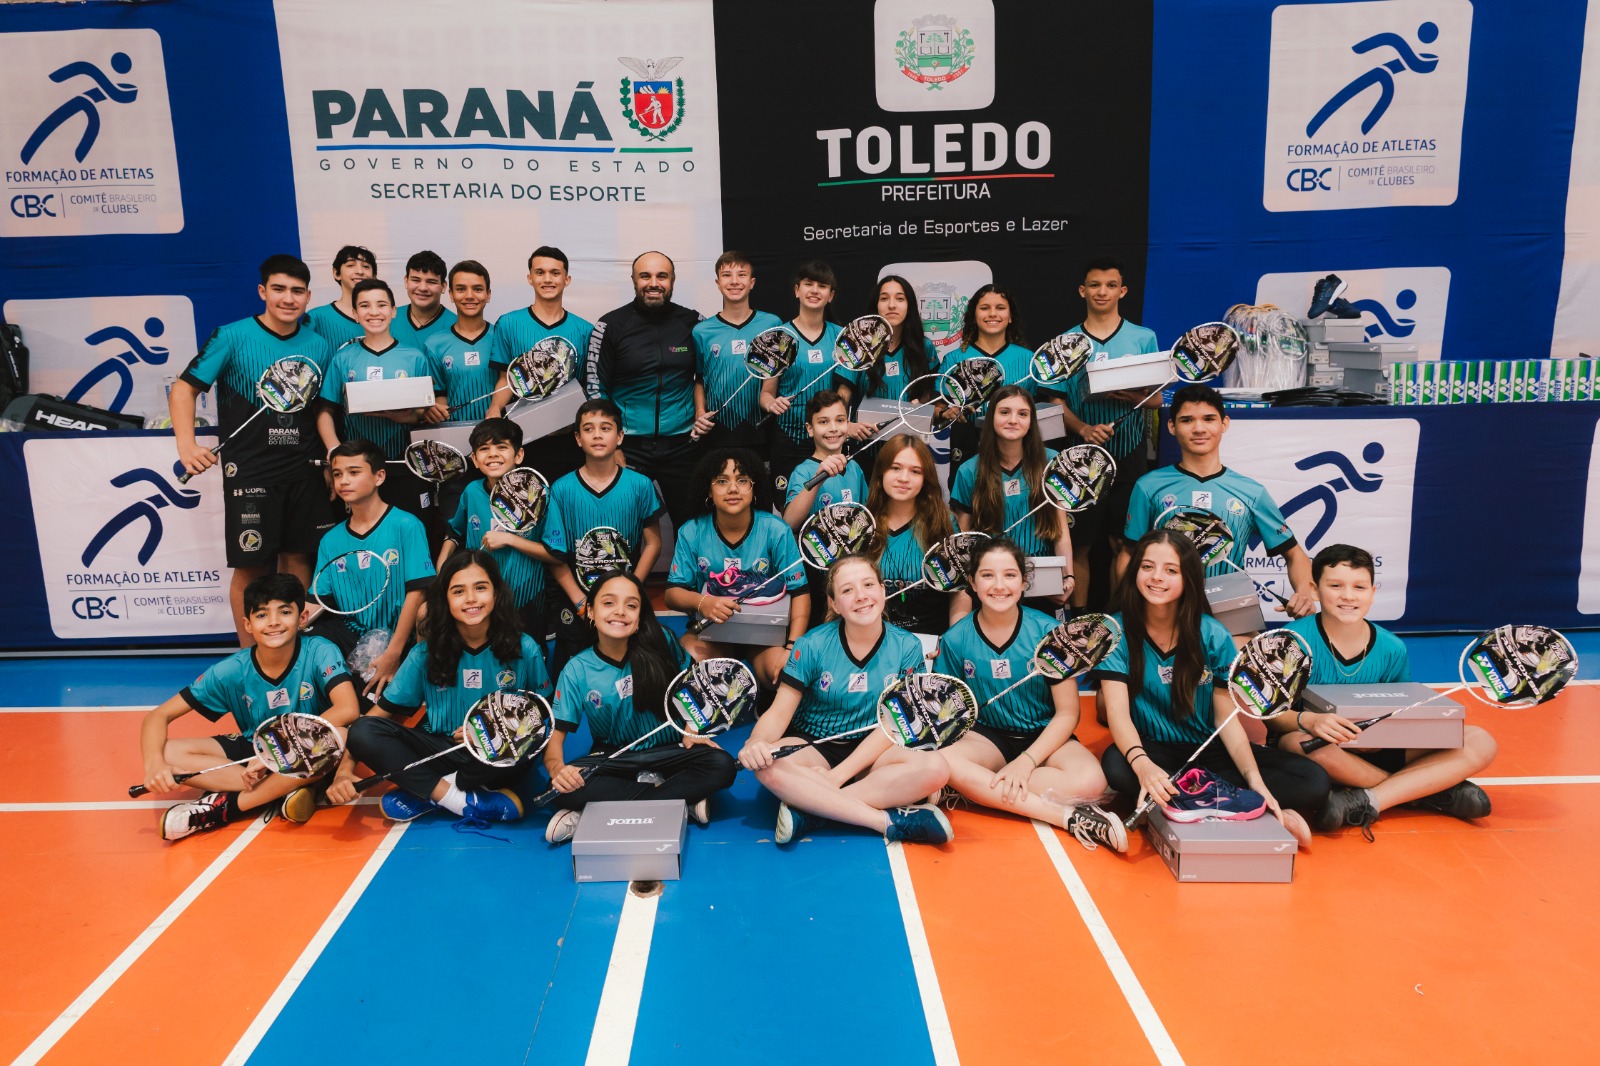 Associação Amigos do Badminton Toledo - PR realizam entrega de materiais adquiridos pelo Edital 09 do CBC